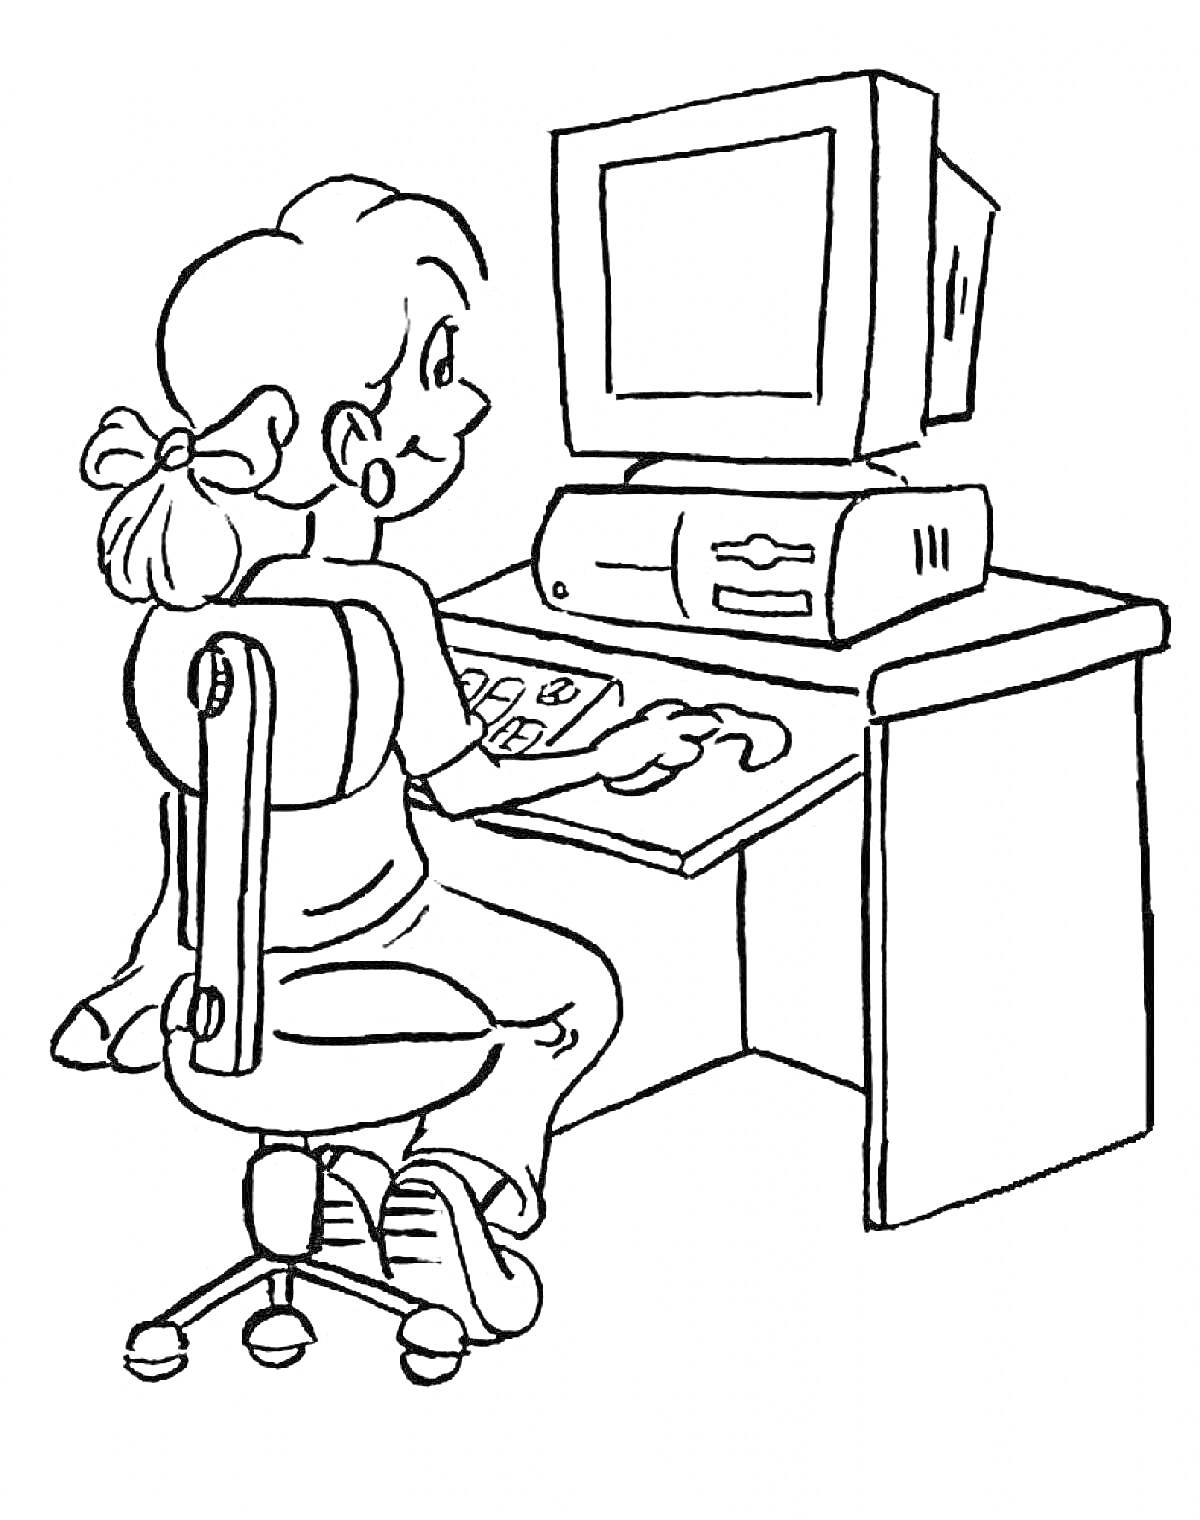 Девочка за компьютером с монитором, системным блоком и клавиатурой на рабочем столе